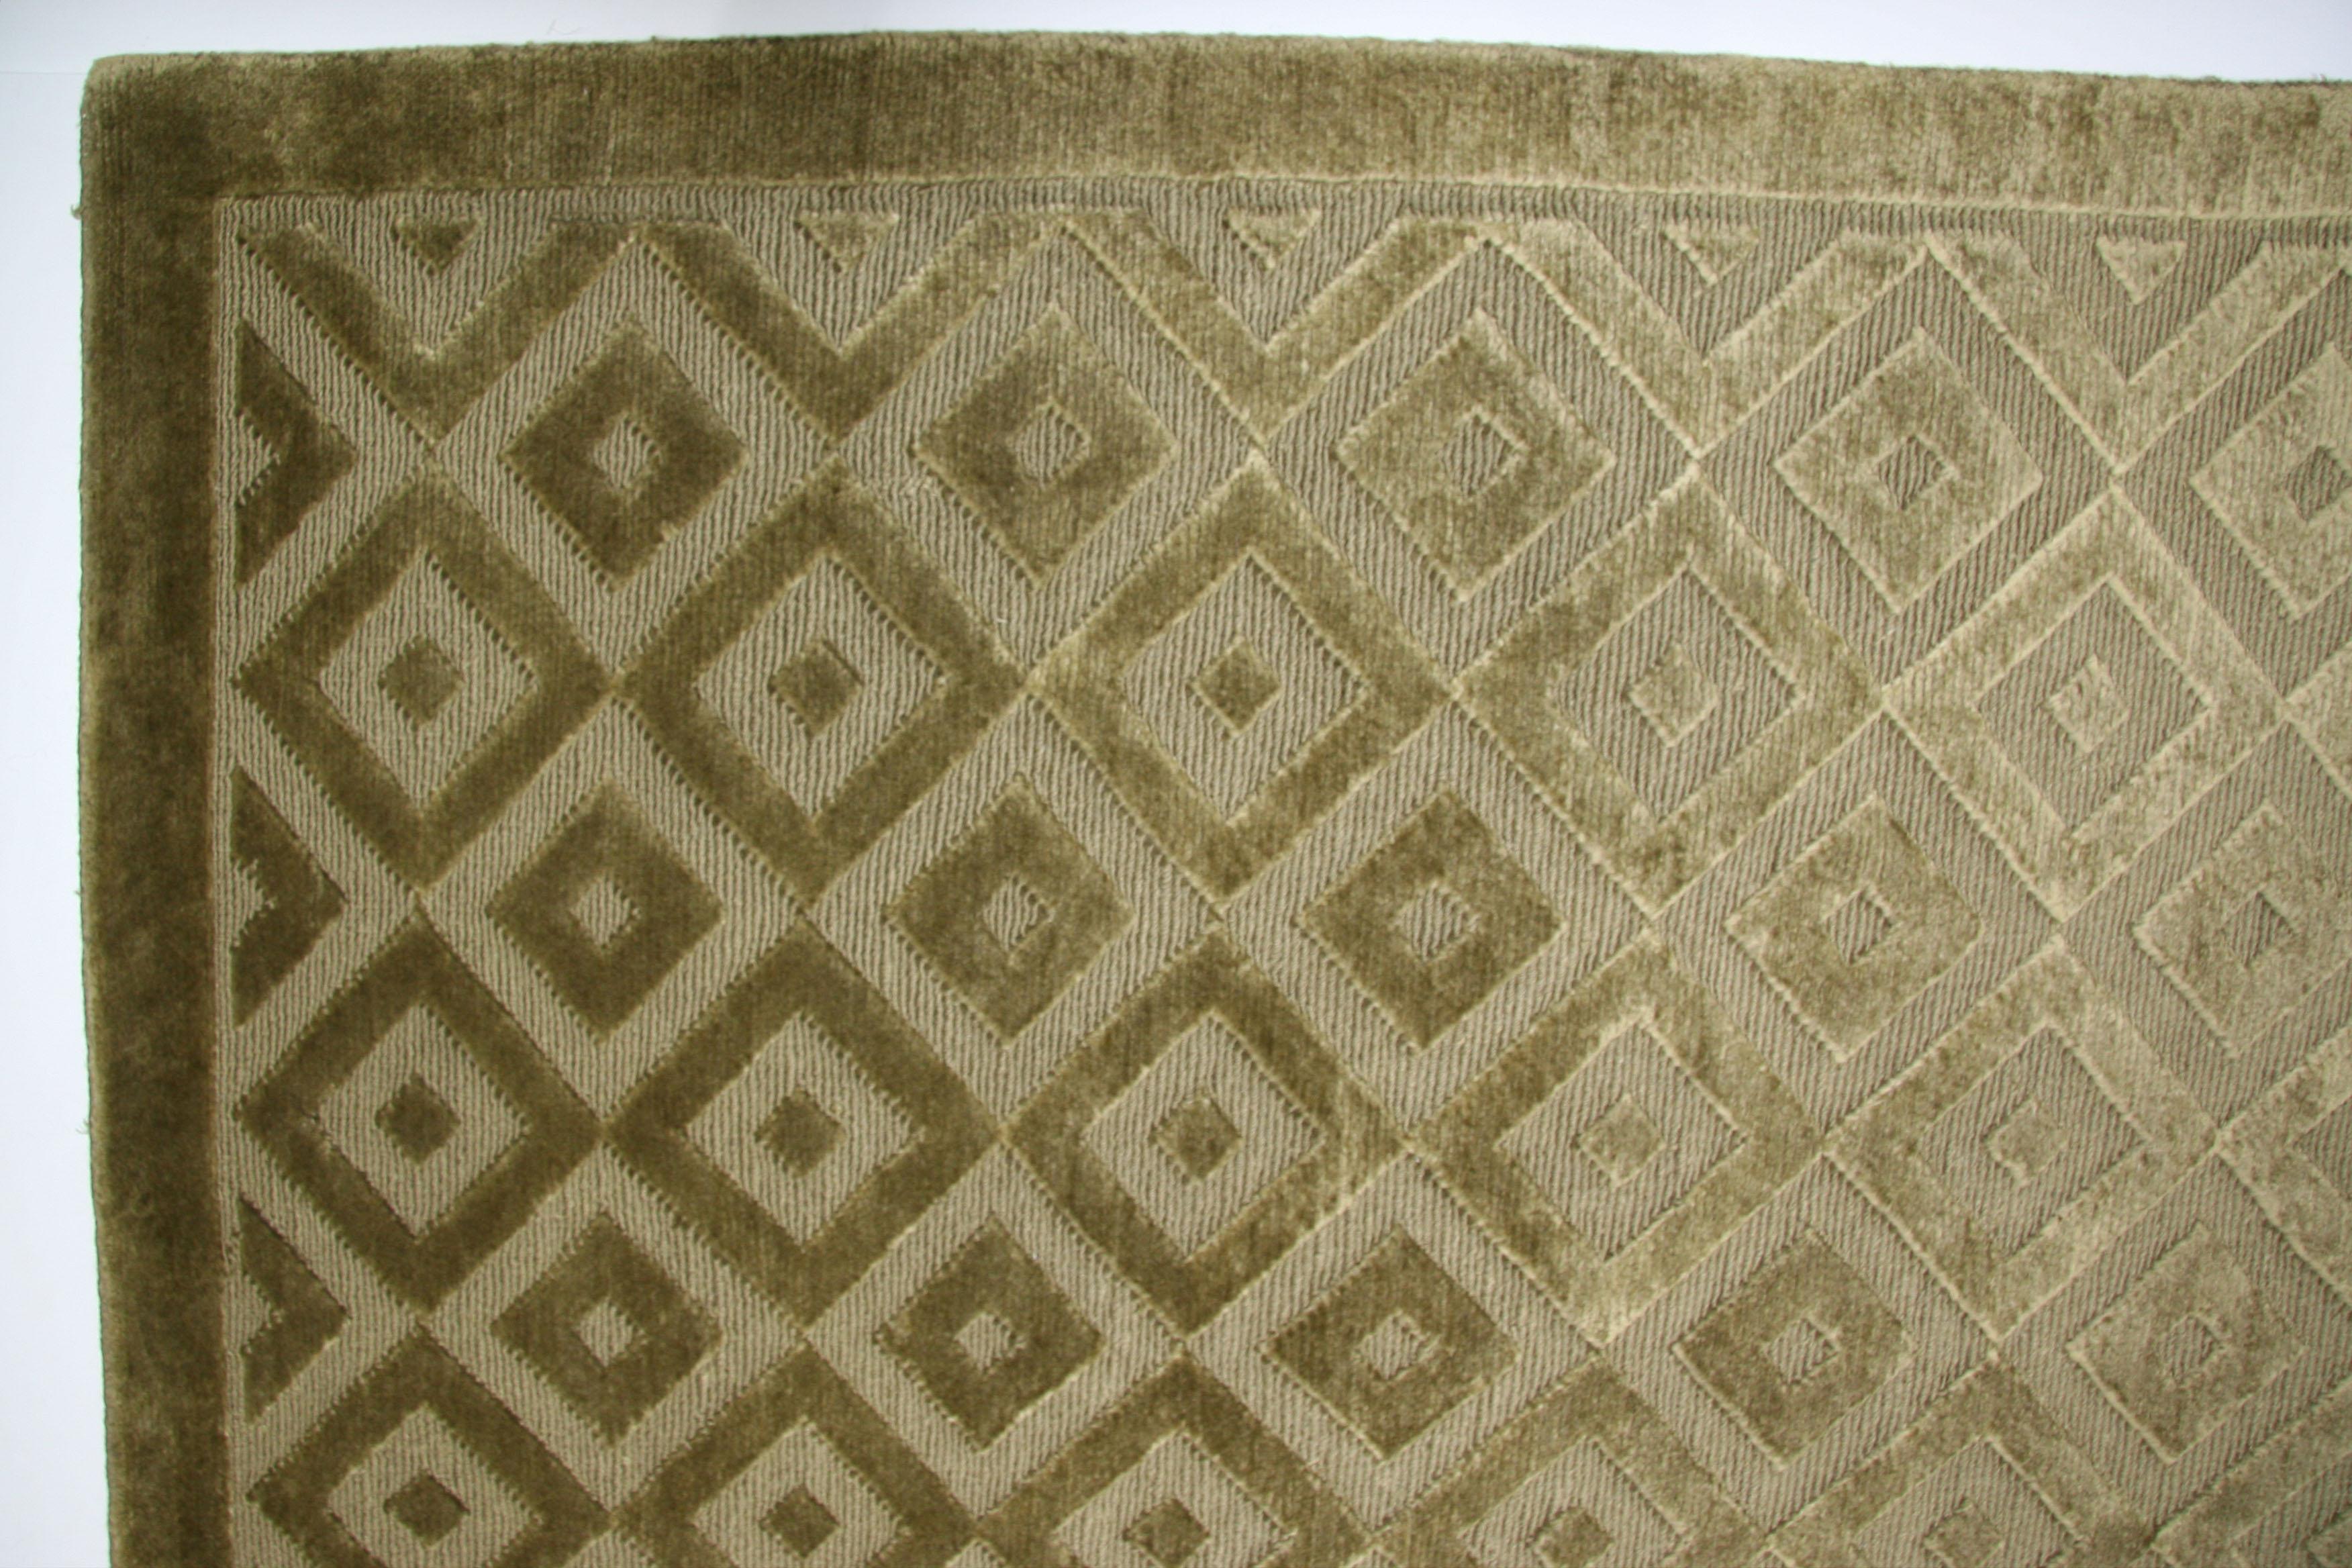 Geschlungene und geschnittene Fasern verbinden sich in diesem modernen Woll- und Seidenteppich zu unterschiedlichen Texturen. Durch die Handknüpftechnik entstehen bei Betrachtung von gegenüberliegenden Seiten deutliche 